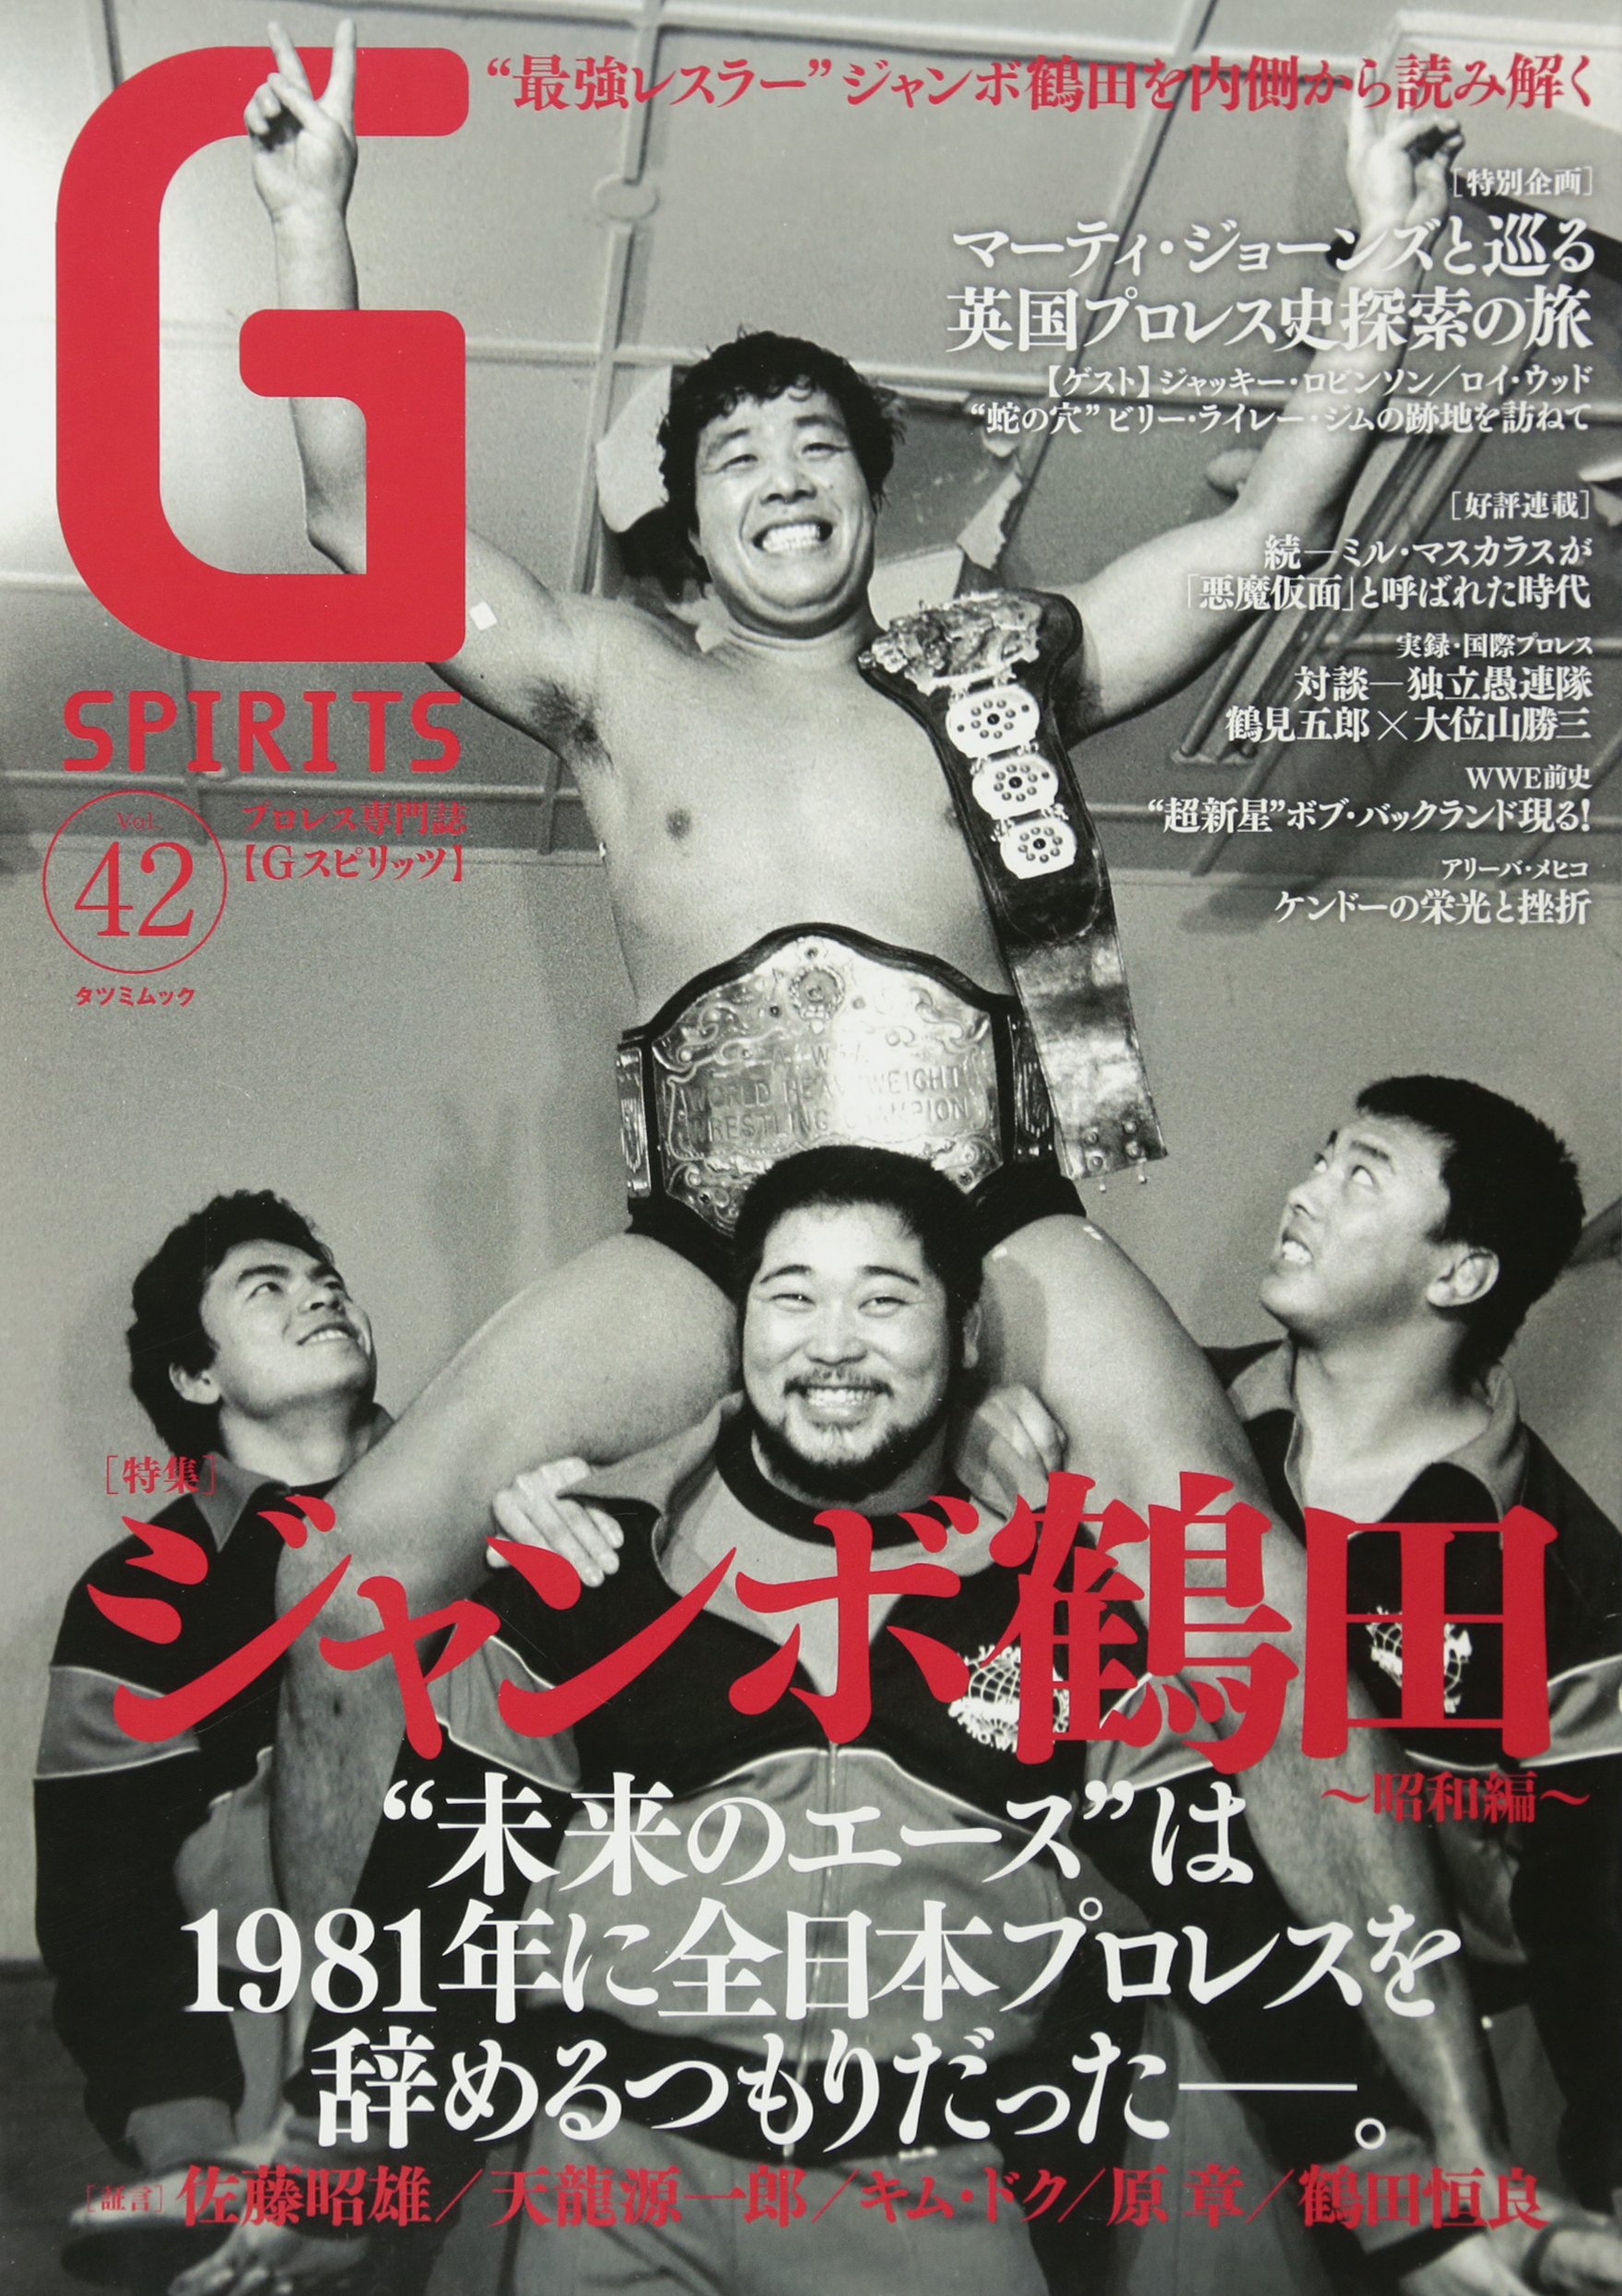 1981年・なぜジャンボ鶴田は全日本プロレスを辞めるつもりだったのか 